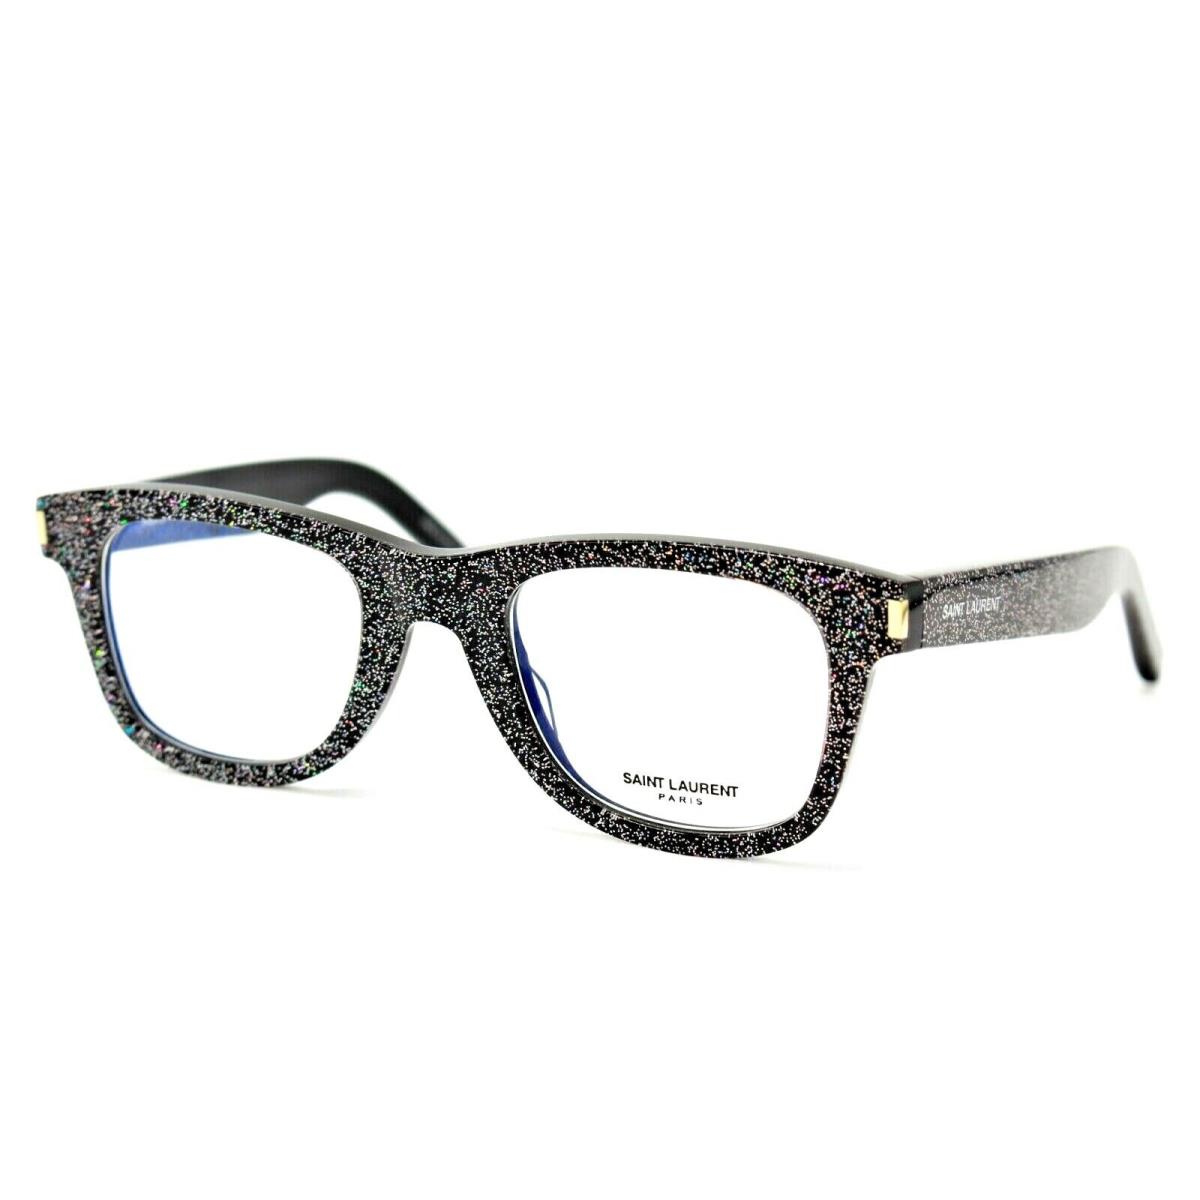 Saint Laurent SL50 012 Sparks ON Black Eyeglasses Frame 48-22